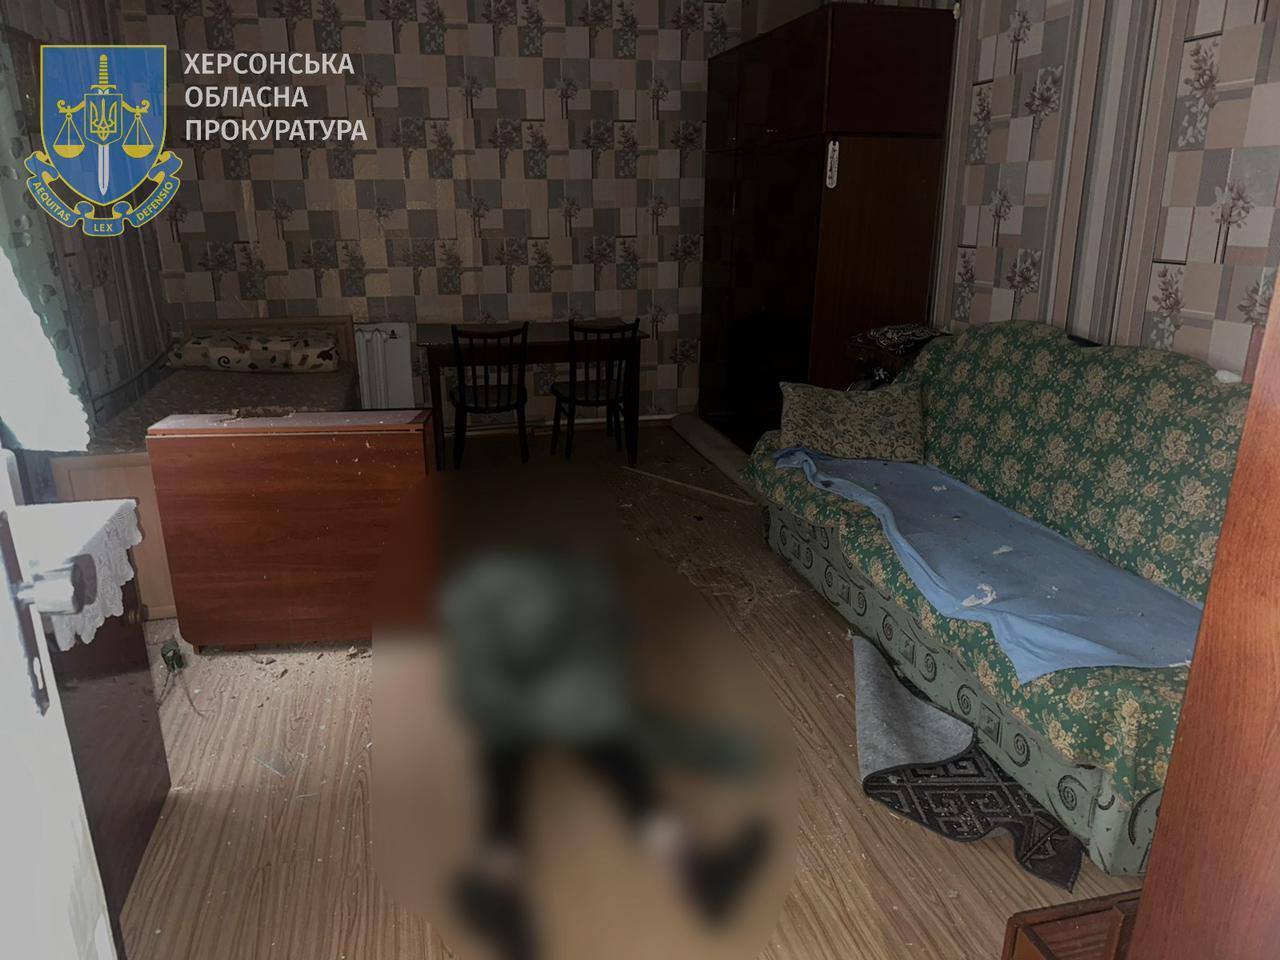  Росіяни обстріляли Херсон: влучили у житловий будинок, загинула жінка